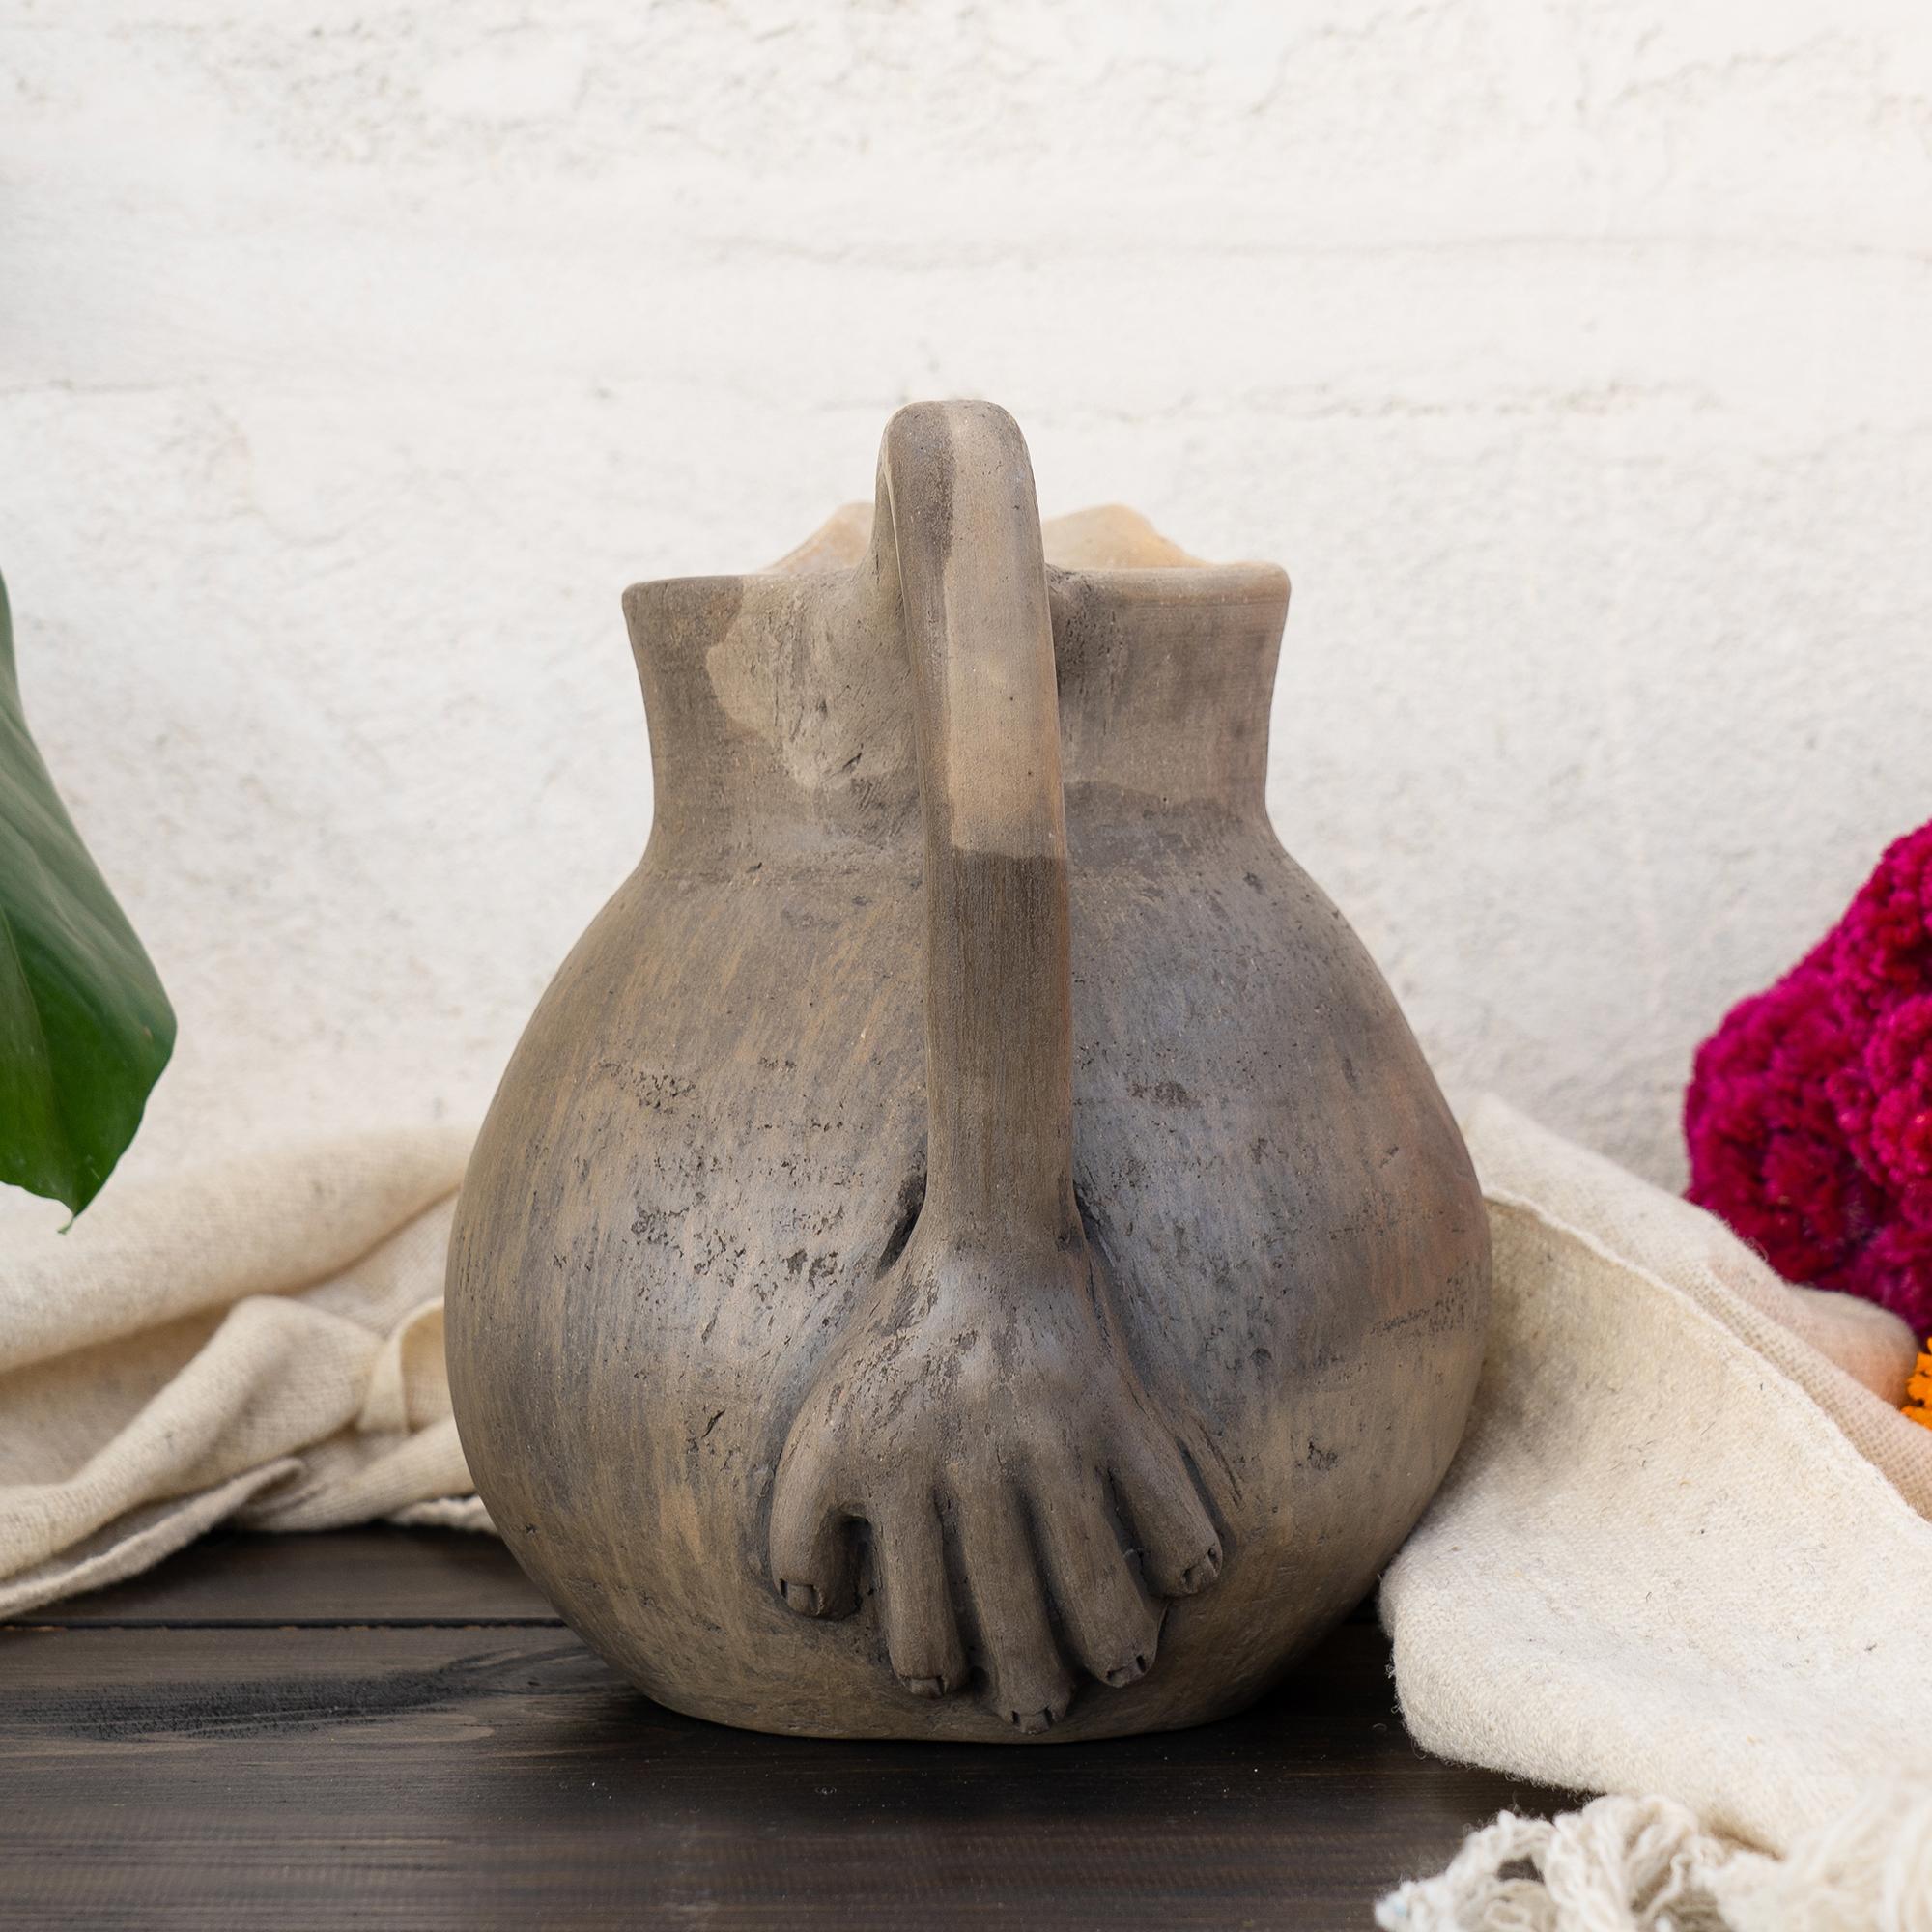 Glazed Hand Handle Ceramic Carafe/Vase For Sale